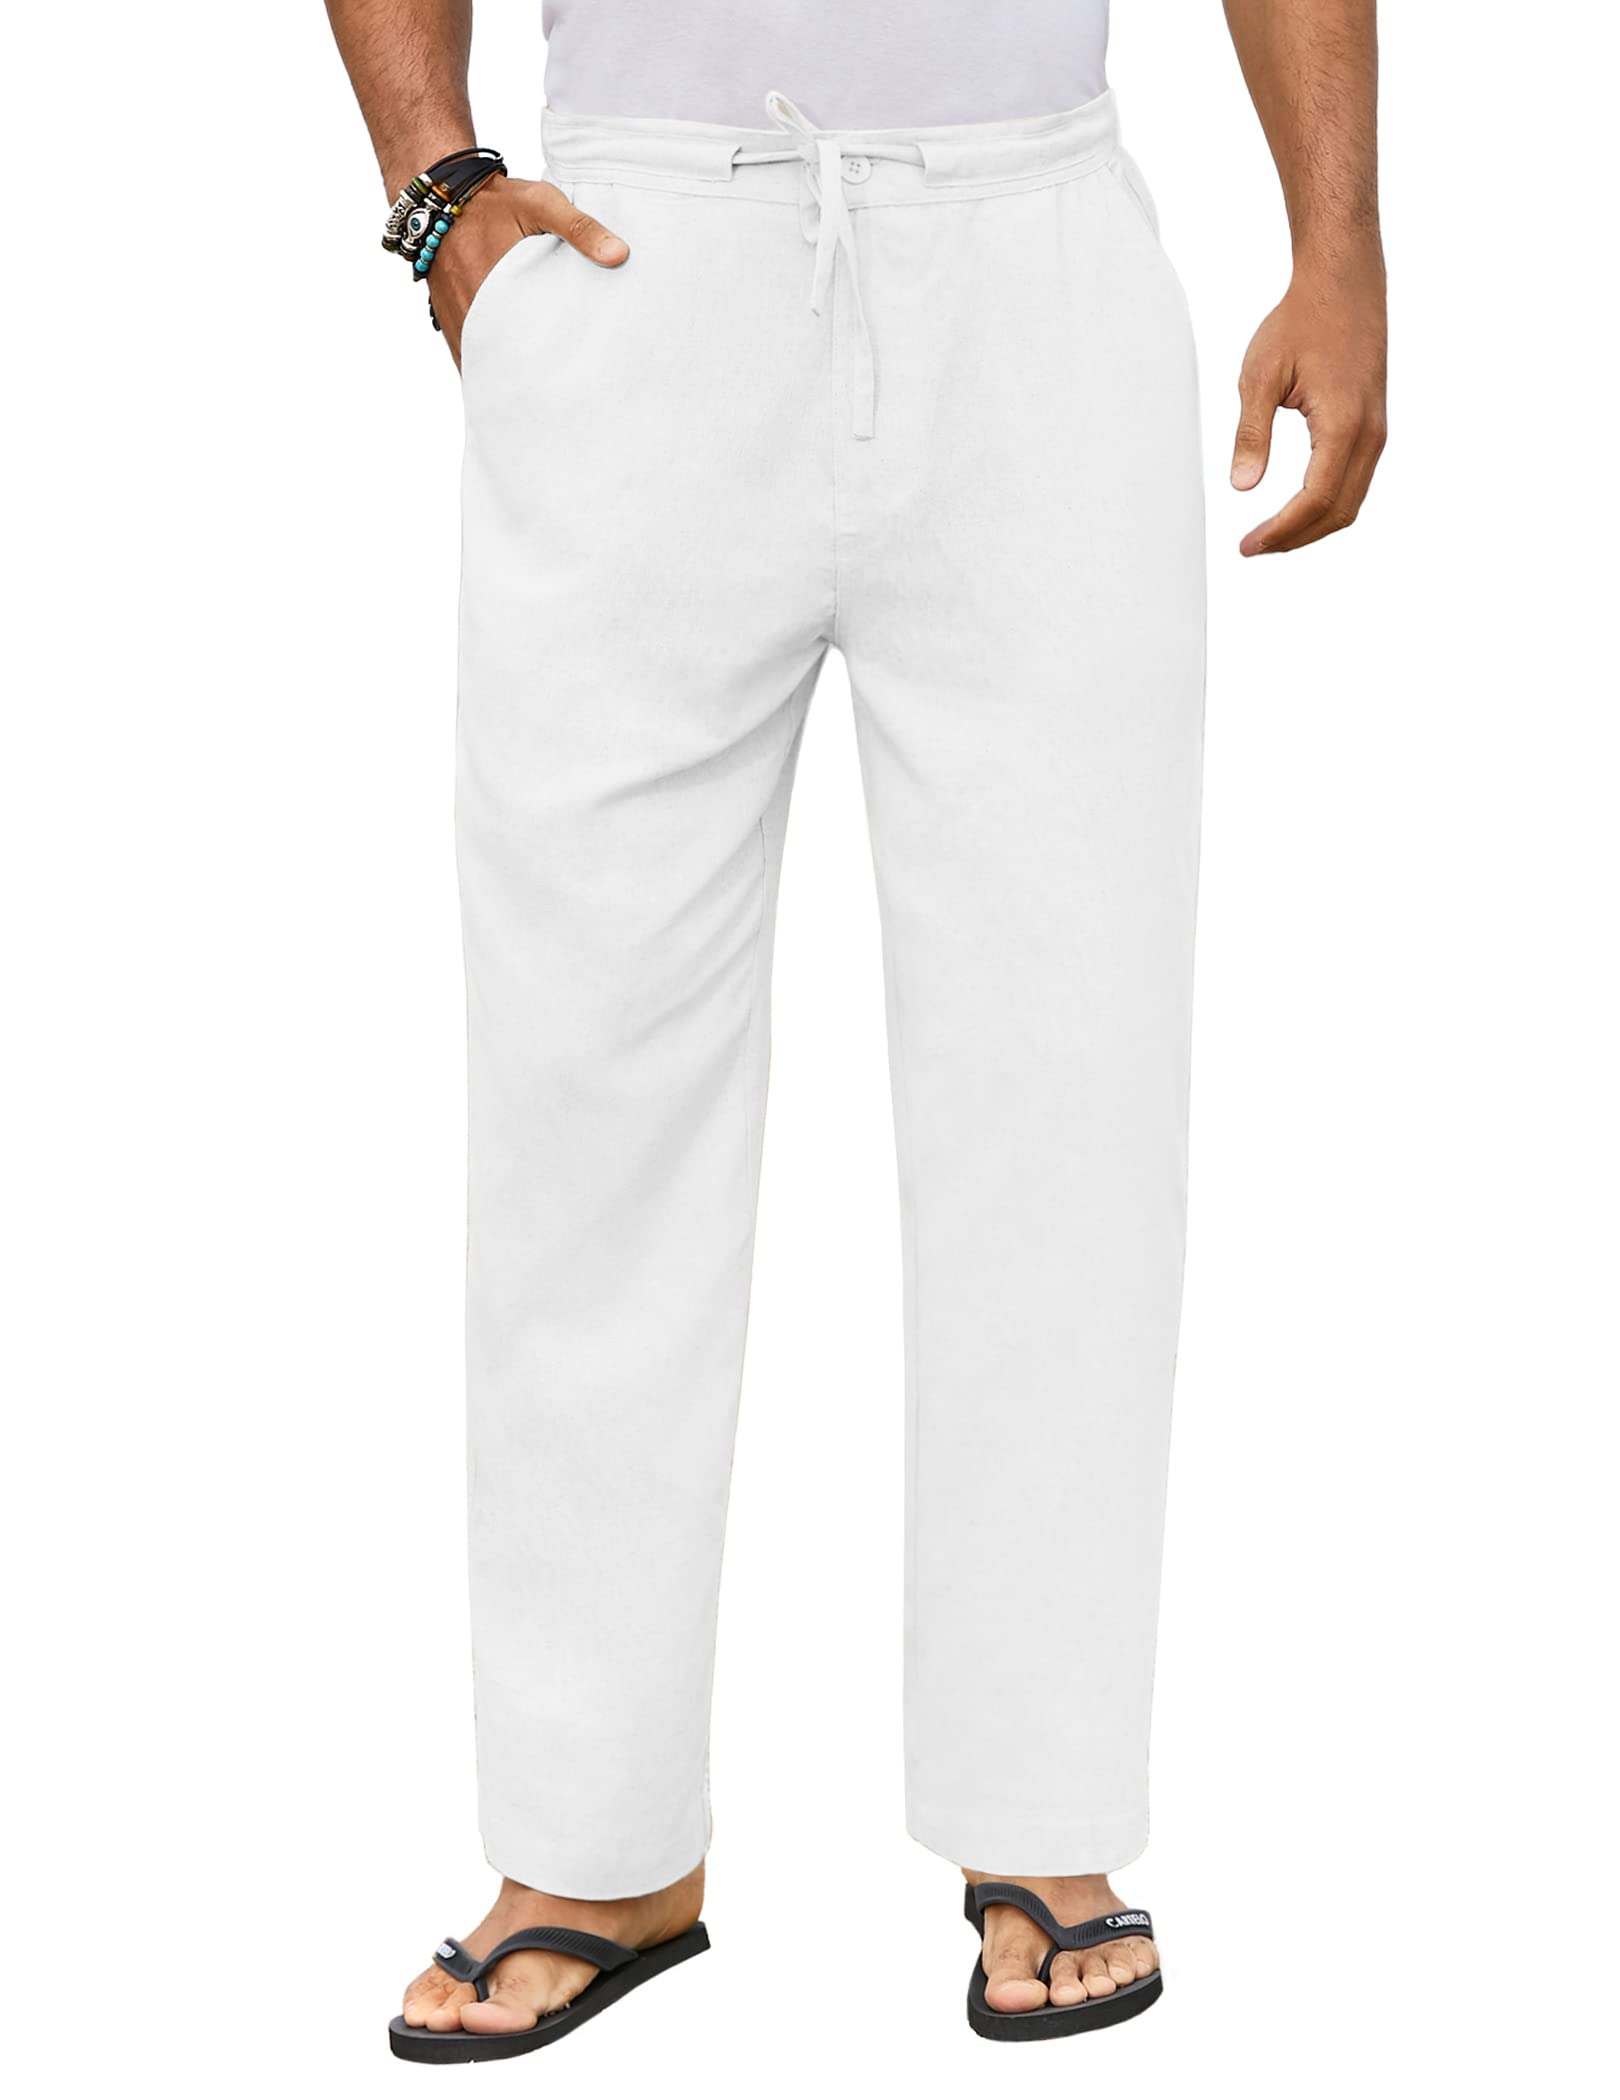 COOFANDY Men's Casual Linen Pants Elastic Waist Drawstring Beach Summer  Pants Lightweight Linen Trousers